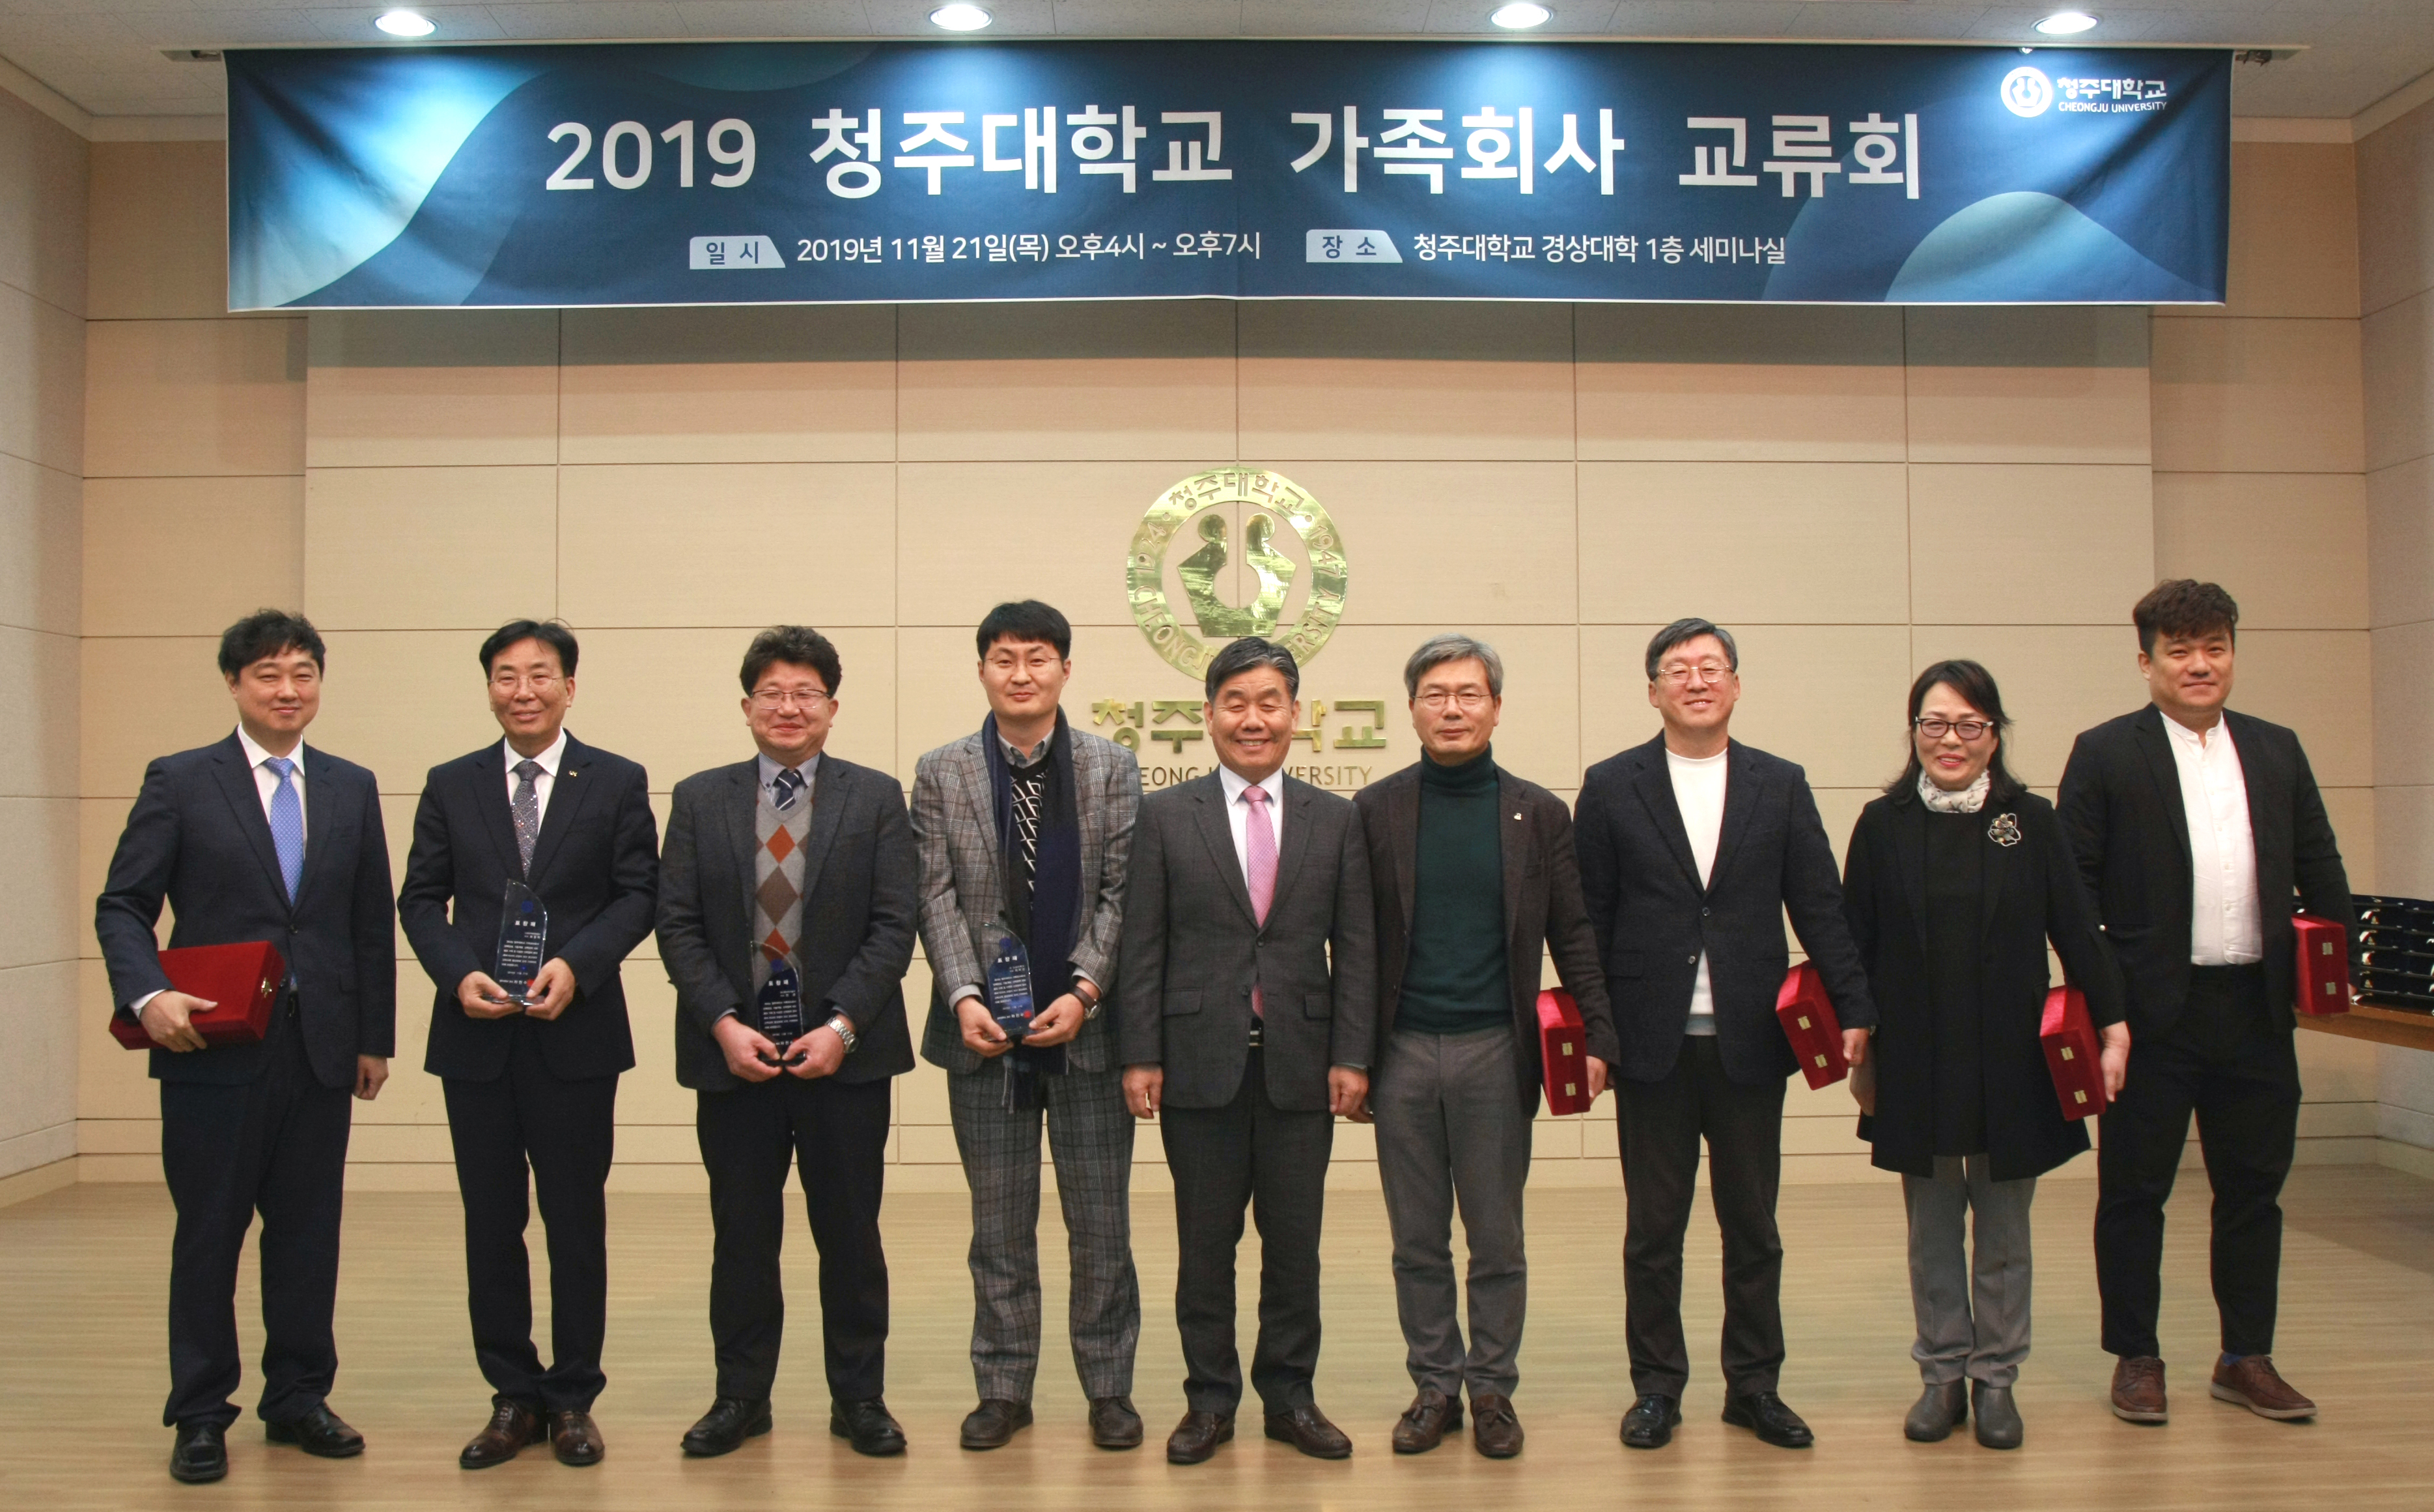 청주대학교는 21일 오후 ‘2019 가족회사 공동기술설명회 및 산학교류회’를 비즈니스대학 세미나실에서 개최했다.